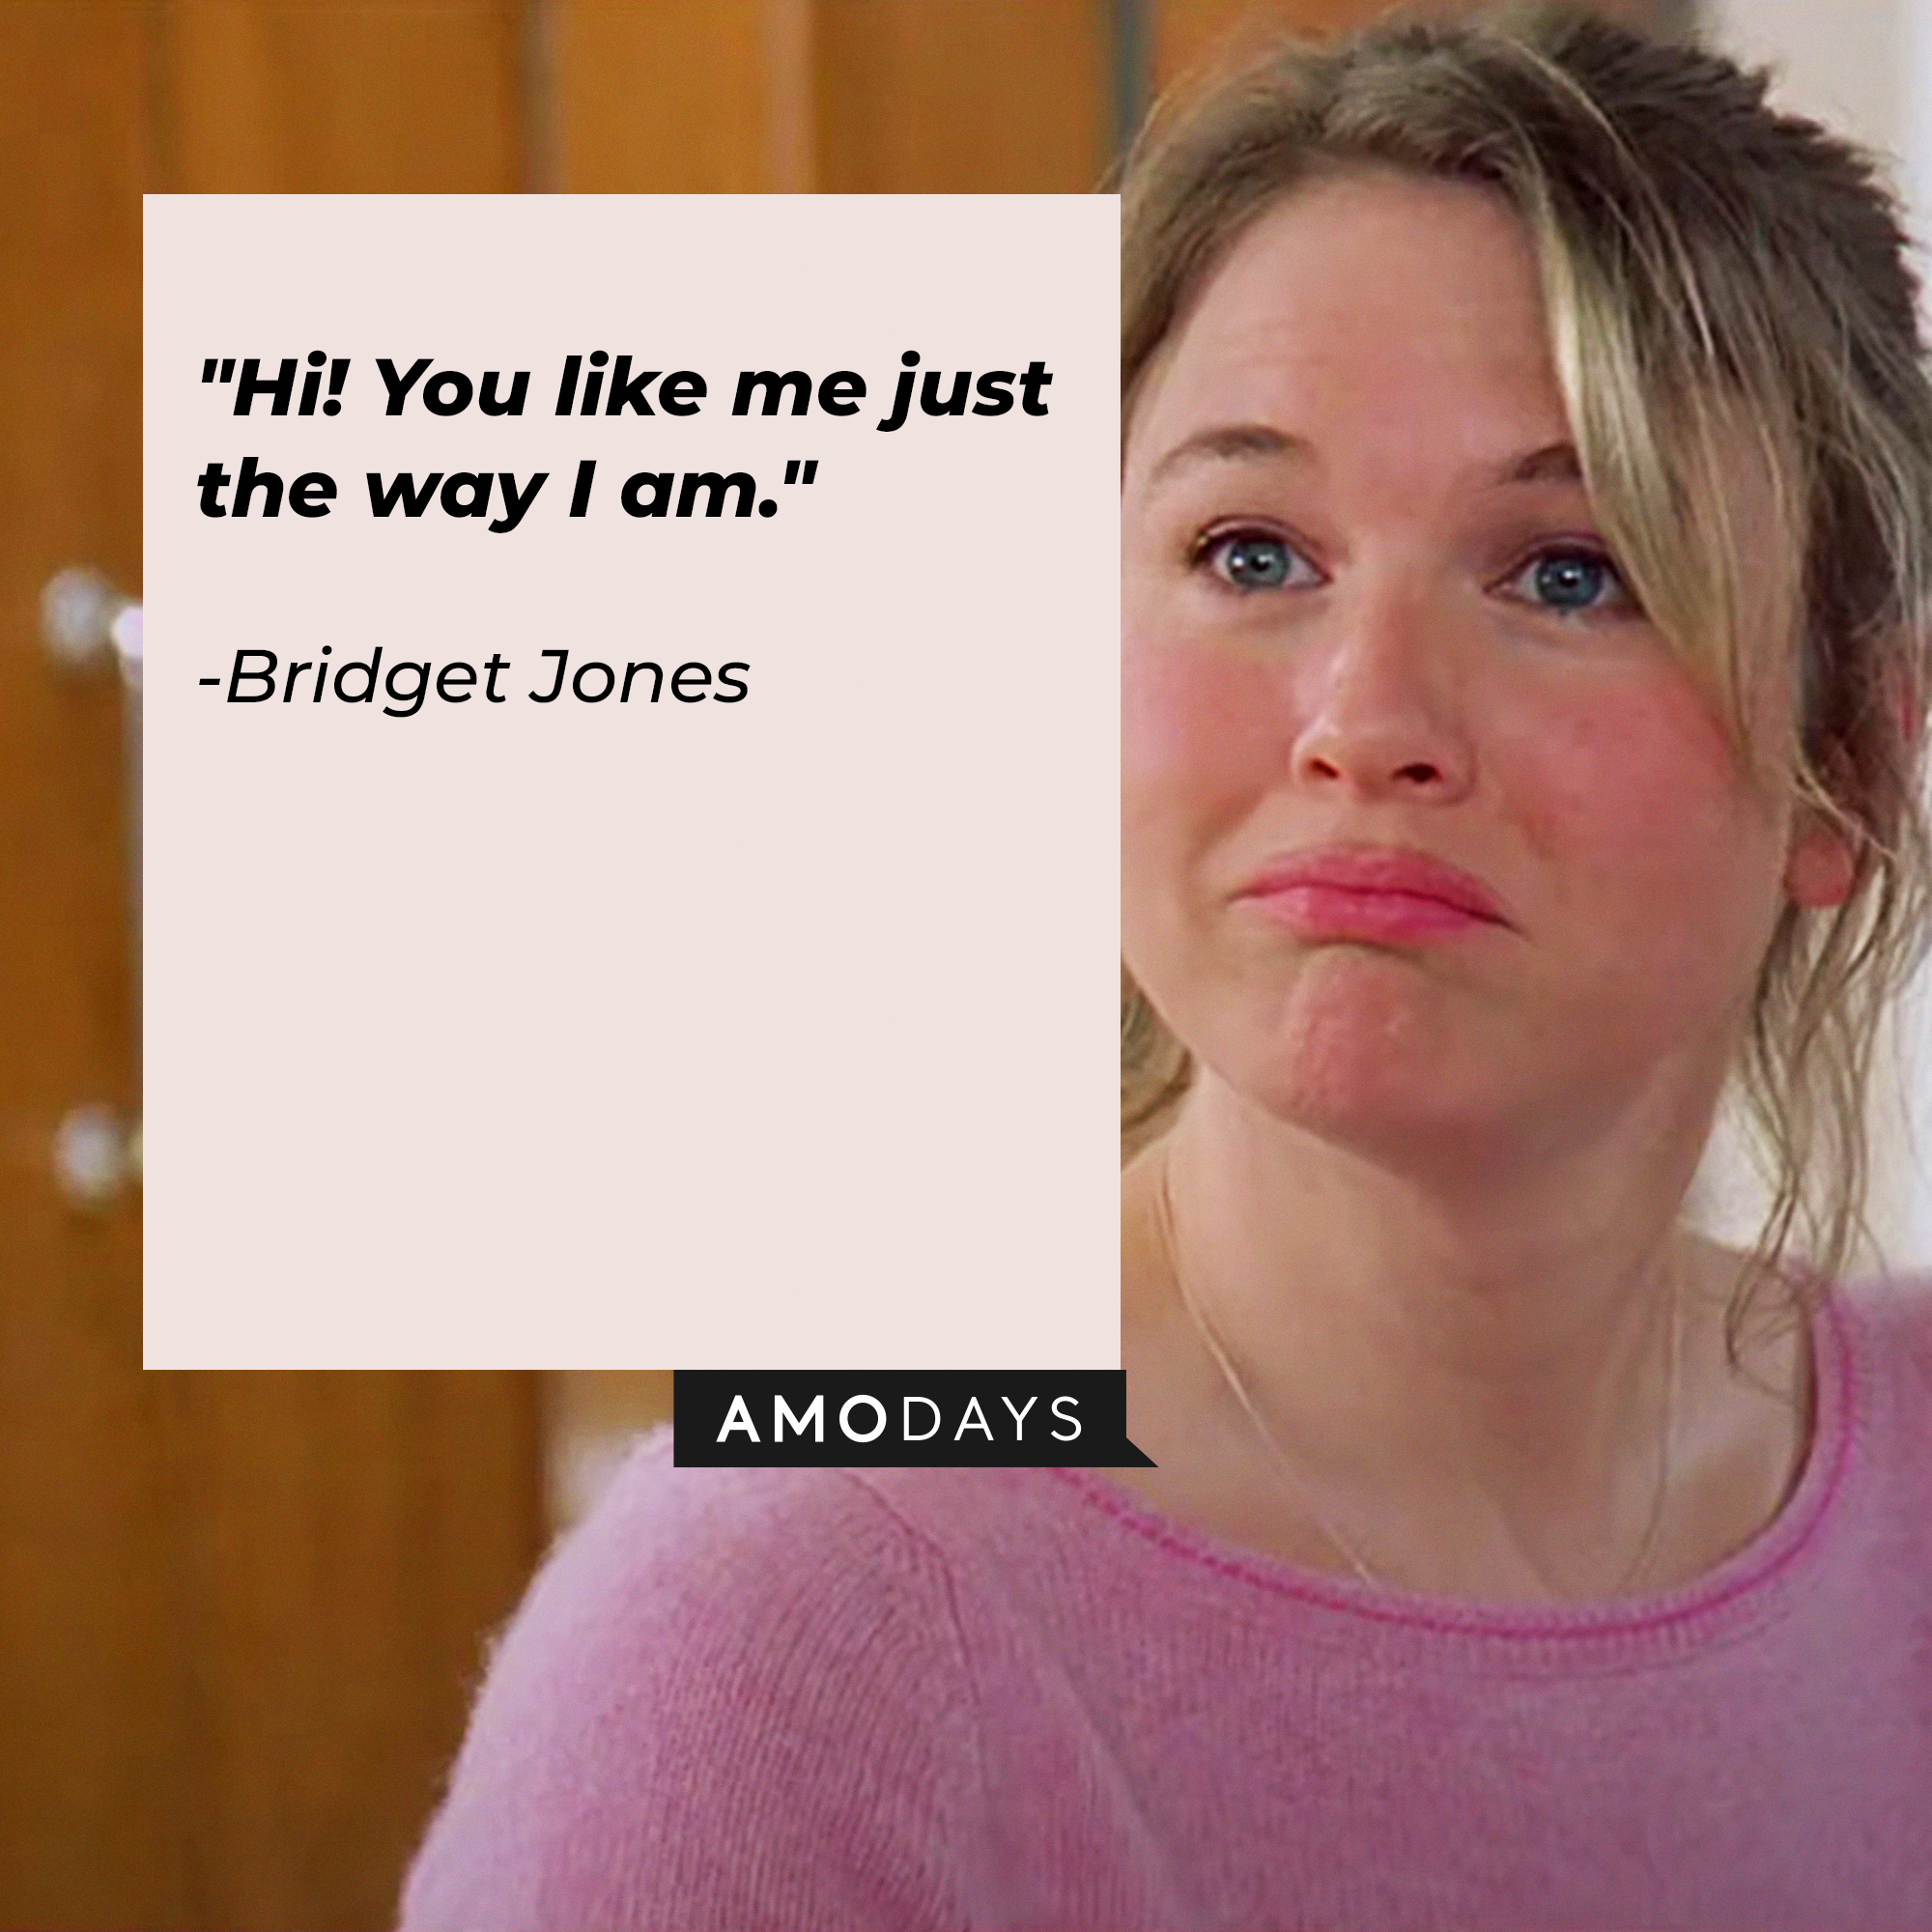 Bridget Jones with her quote in "Bridget Jones's Diary:" "Hi! You like me just the way I am." | Source: Facebook/BridgetJonessDiary